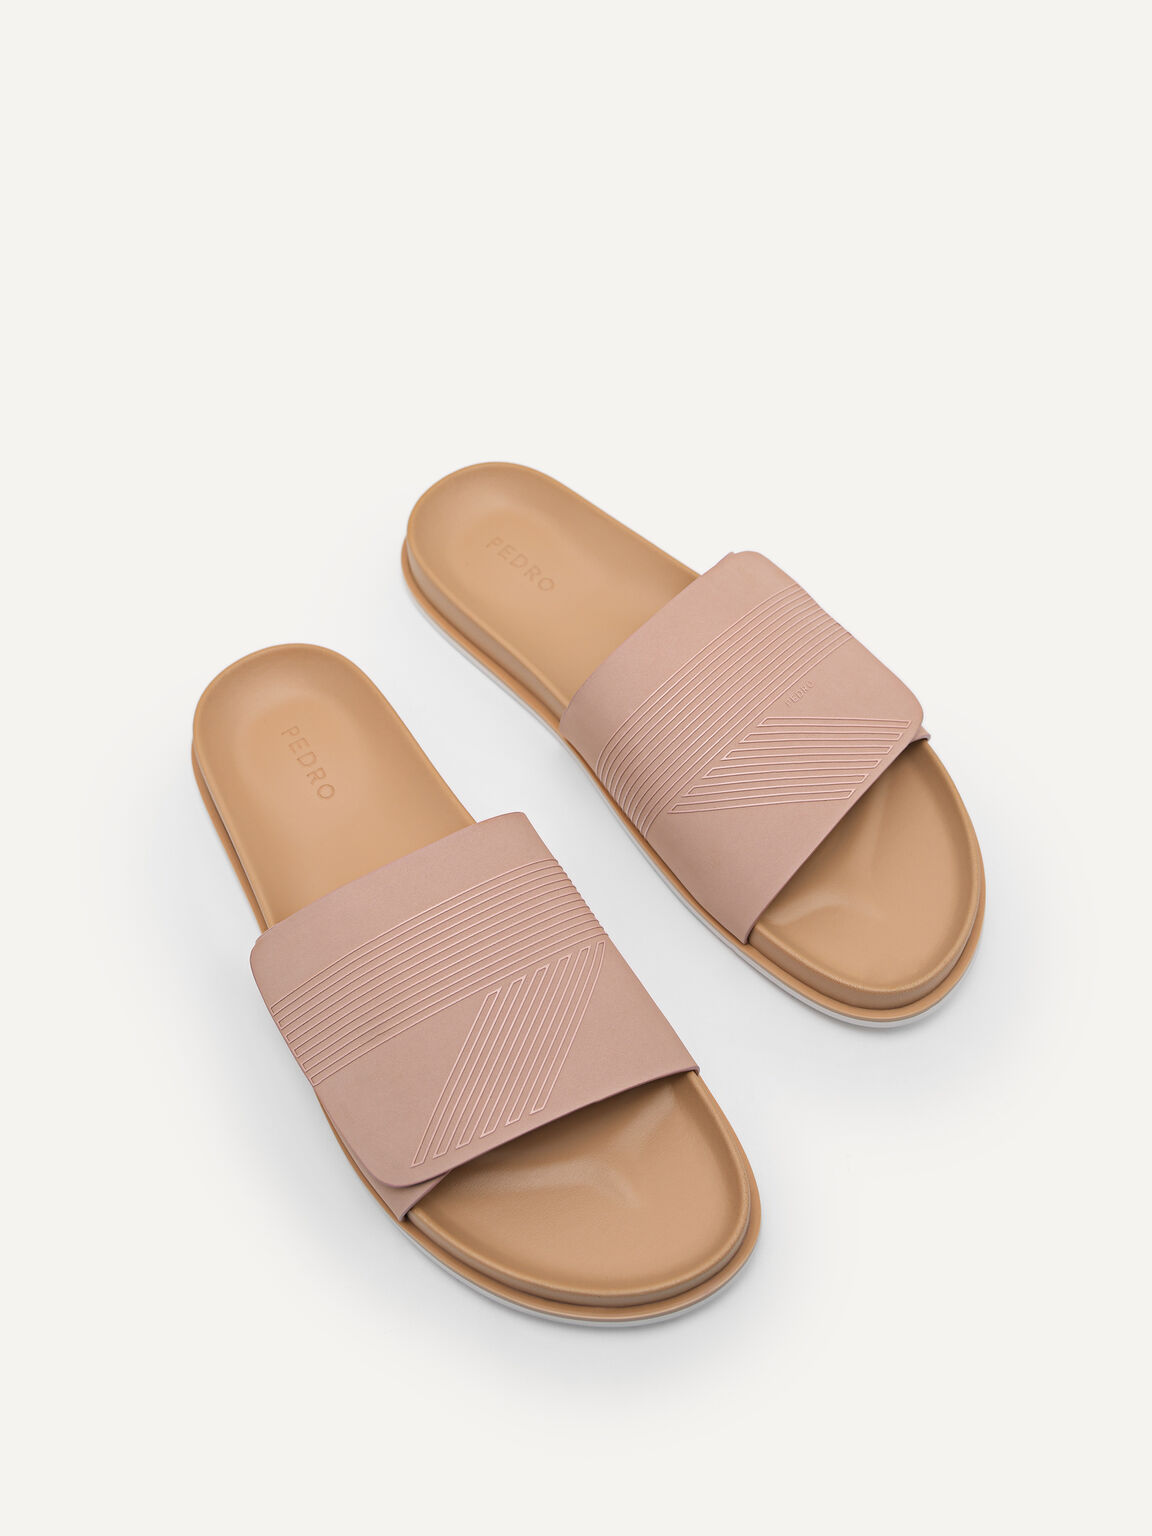 Slide Sandals, Nude